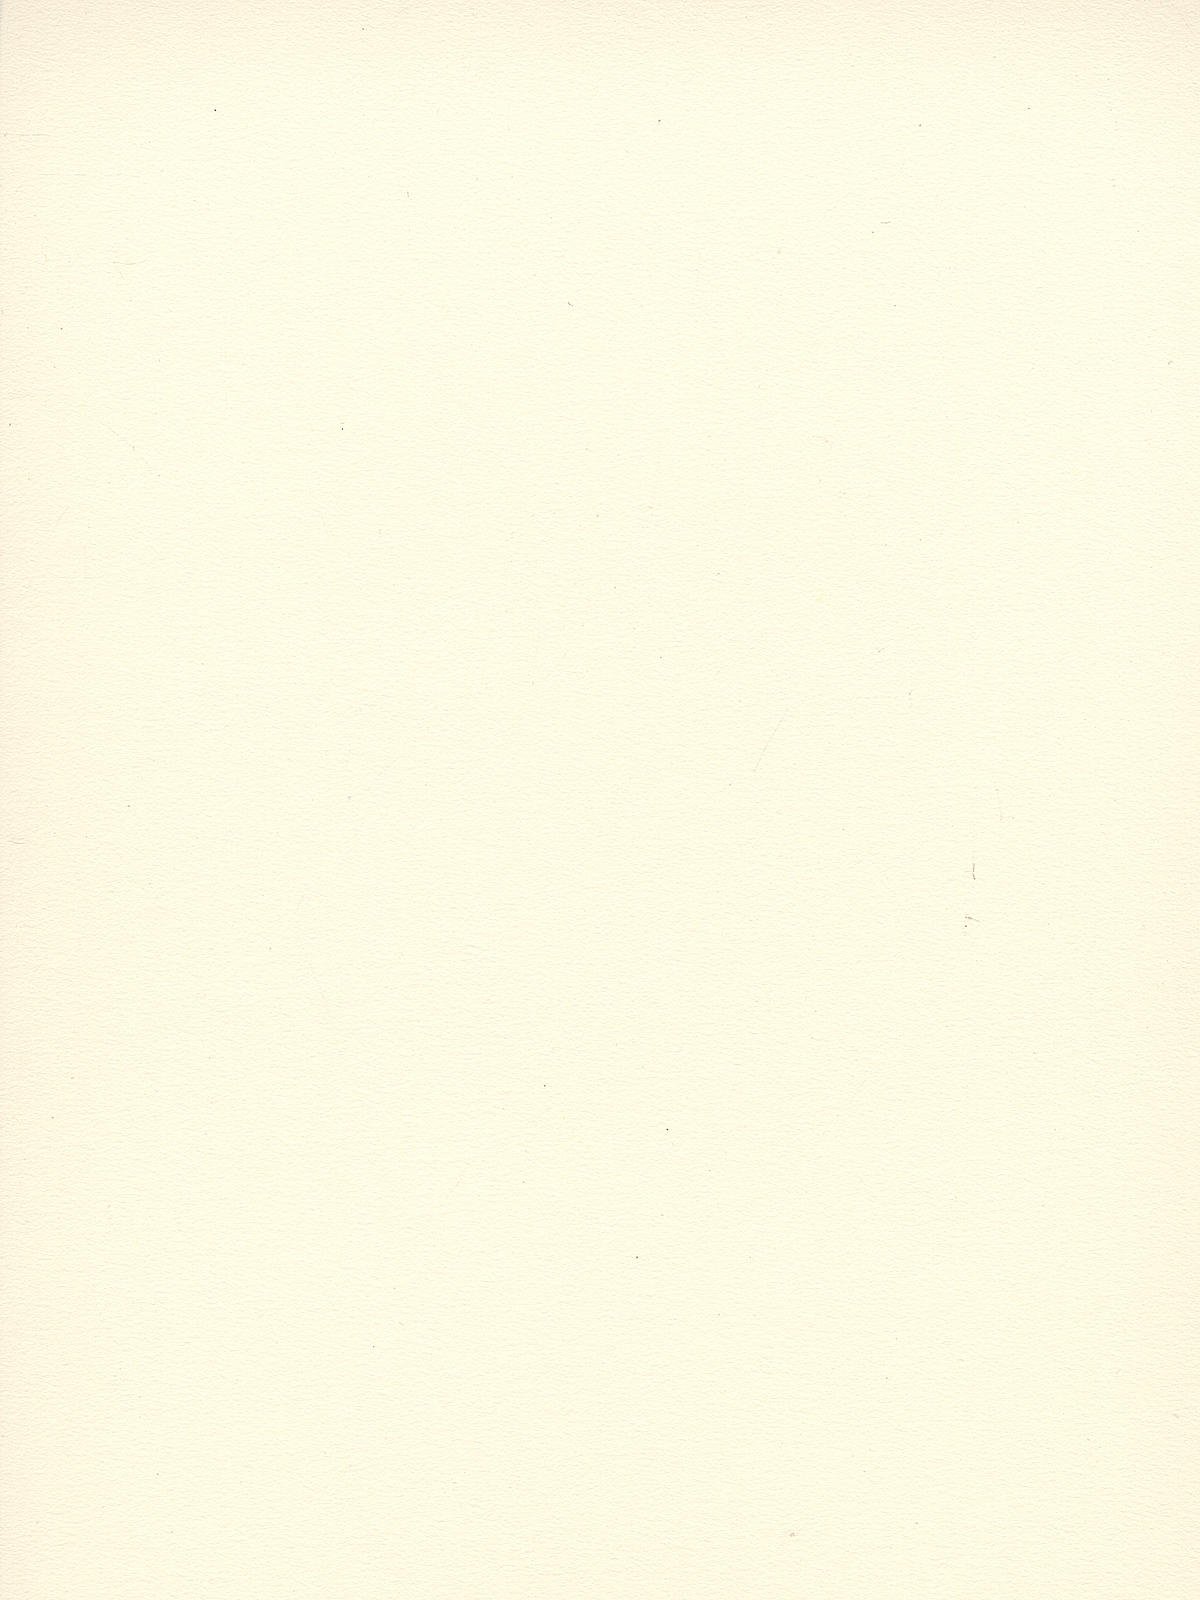 Crescent Illustration Board - 15x20, White, Cold Press, No. 16